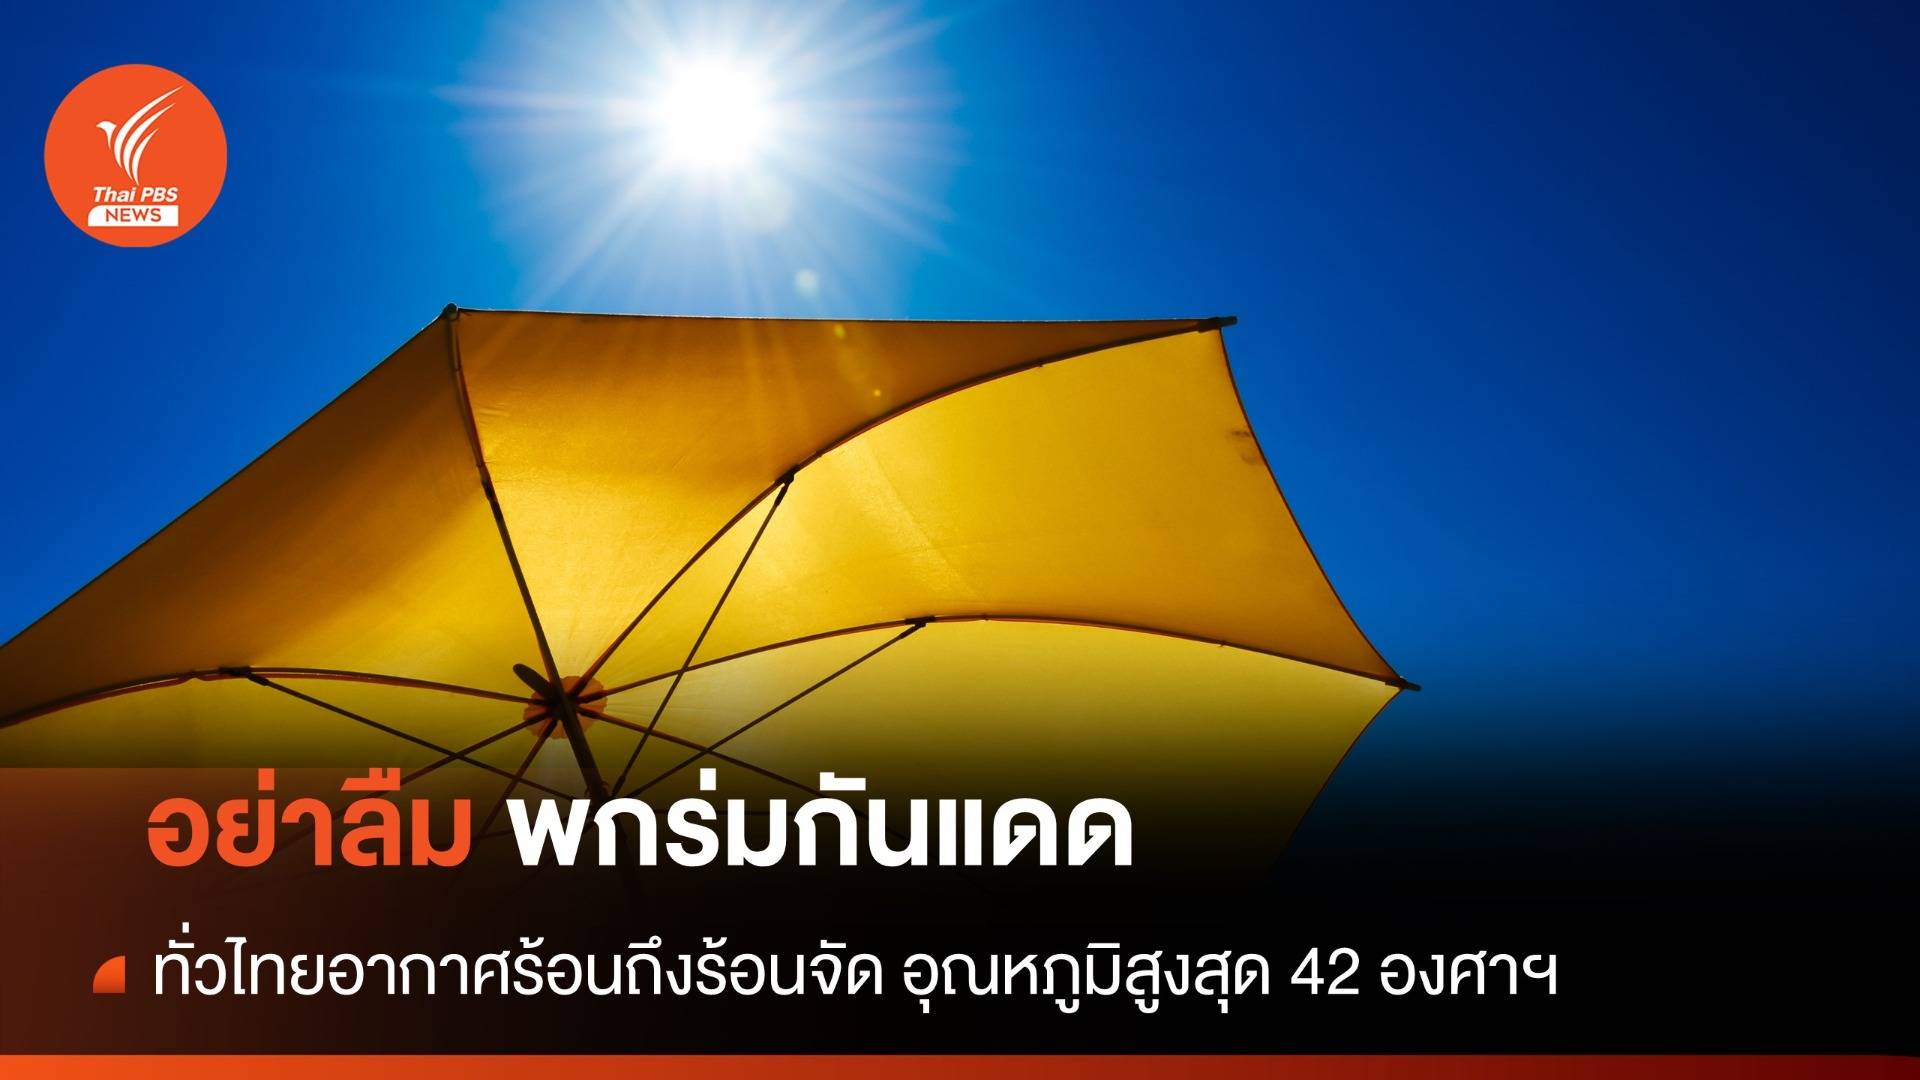 สภาพอากาศวันนี้ ความกดอากาศต่ำปกคลุม ทั่วไทยร้อนถึงร้อนจัด อุณหภูมิสูงสุด 42 องศาฯ